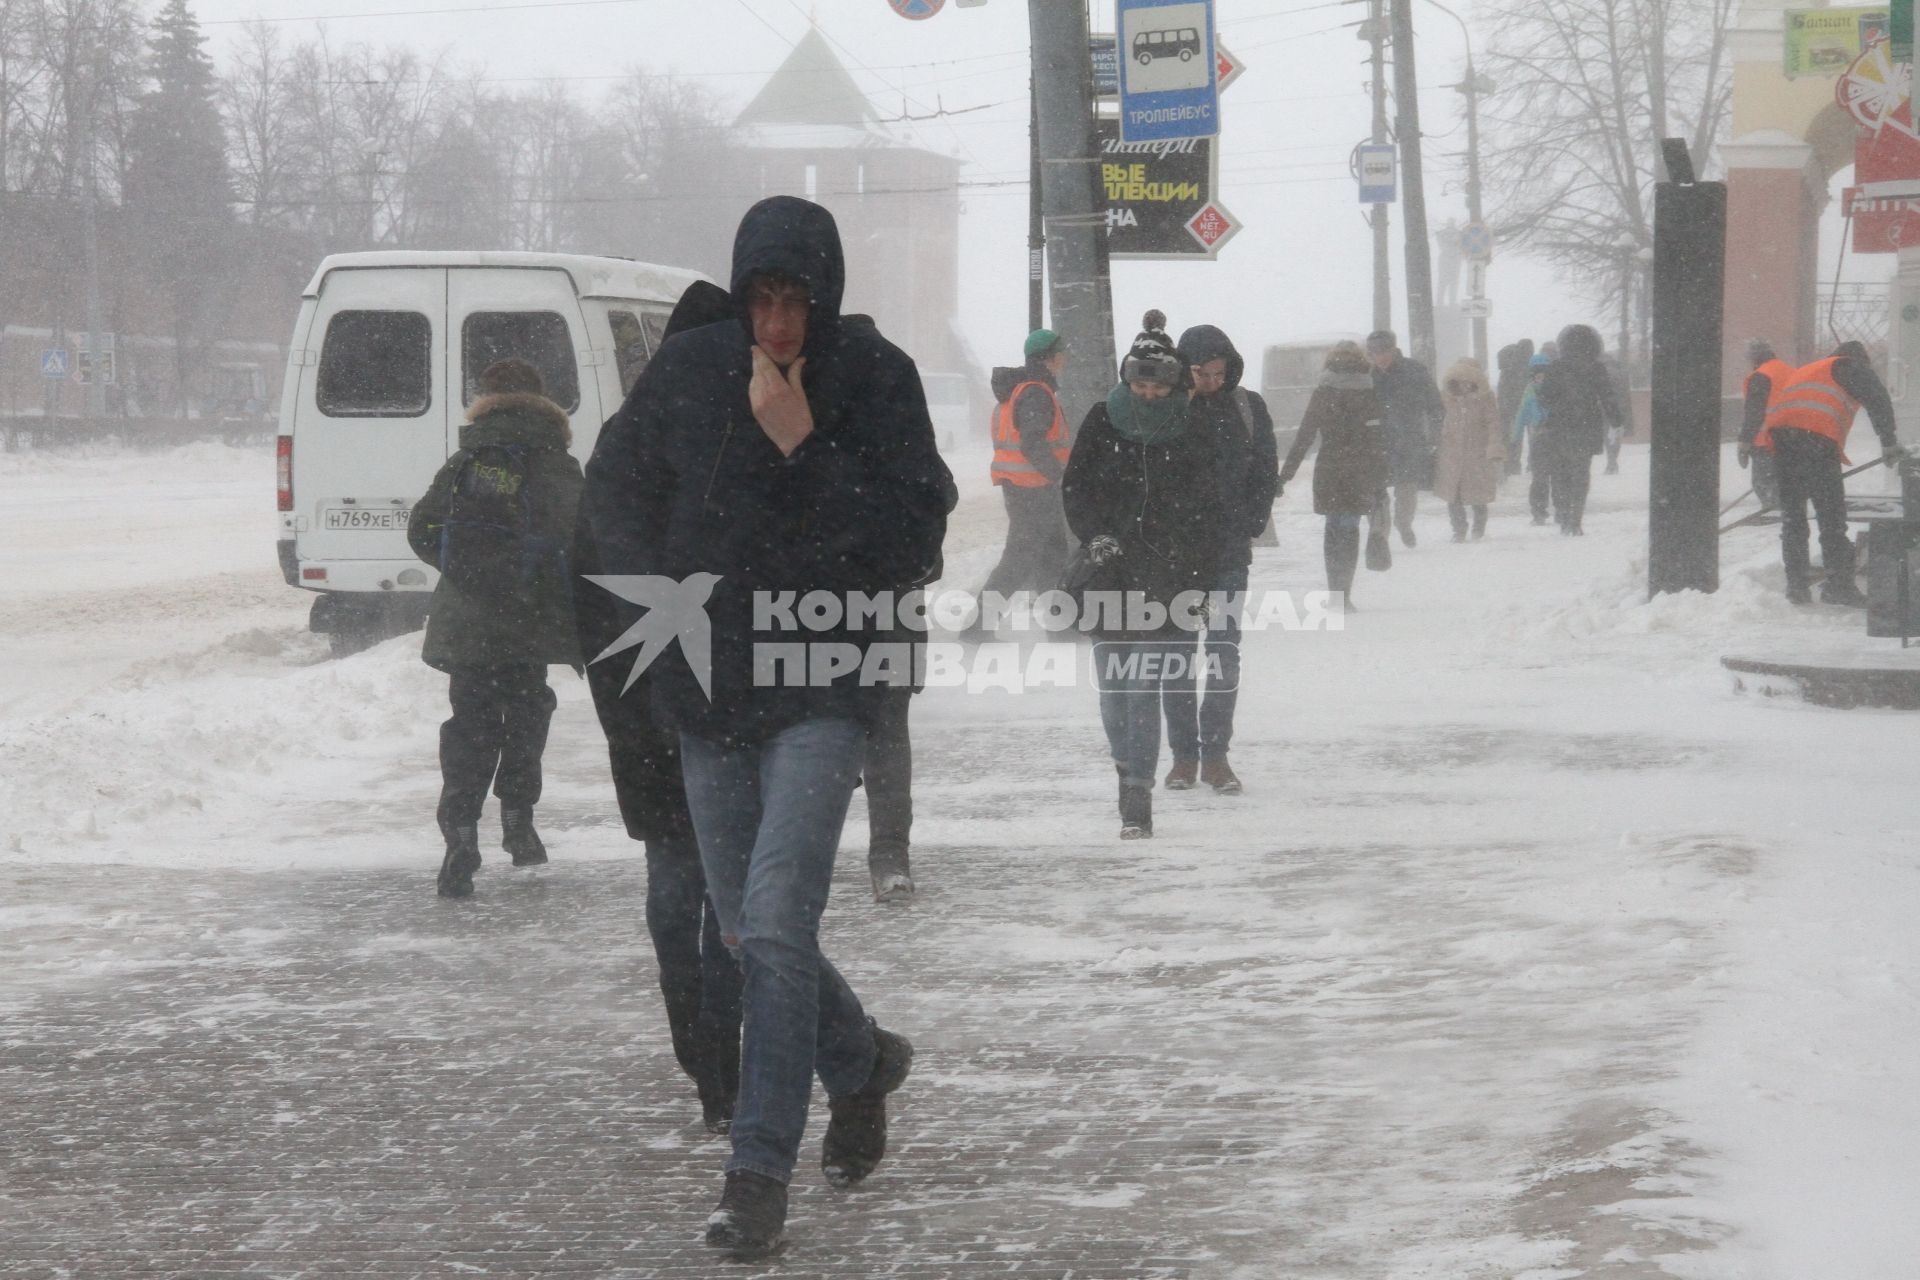 Нижний Новгород. Люди идут по  улице во время метели.